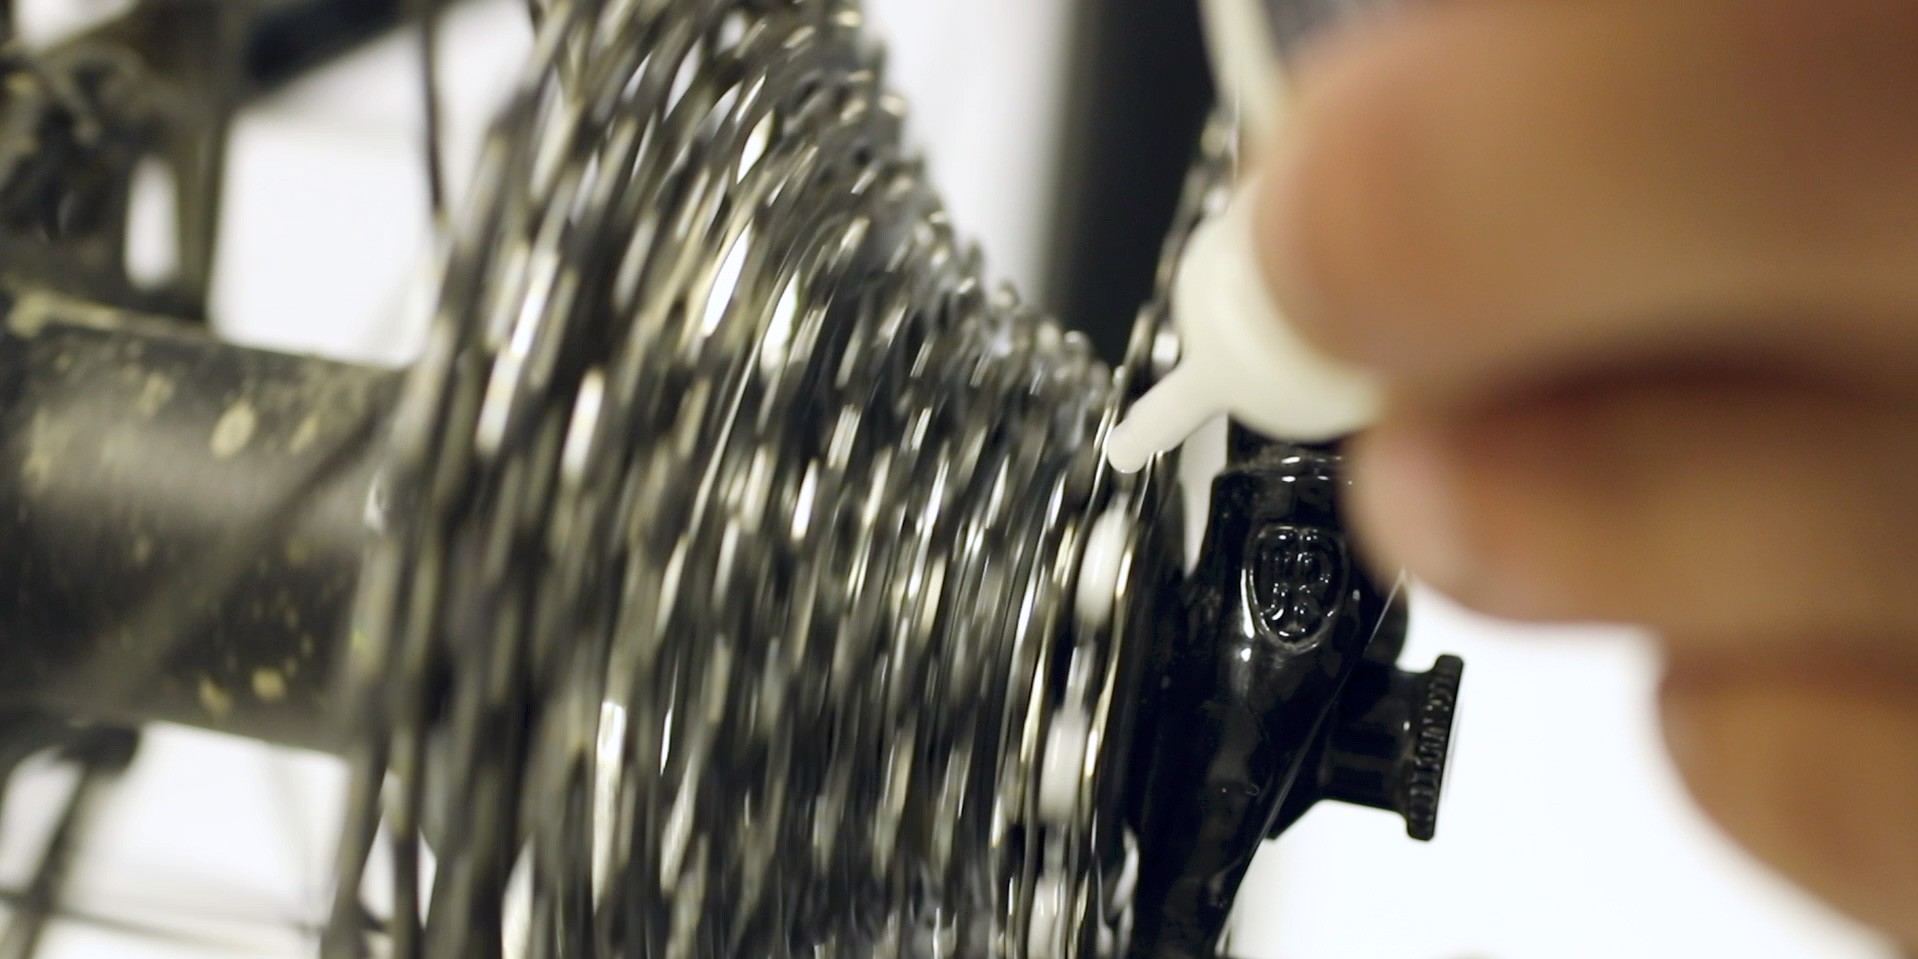 Fahrradkette schmieren mit DryFluid Bike